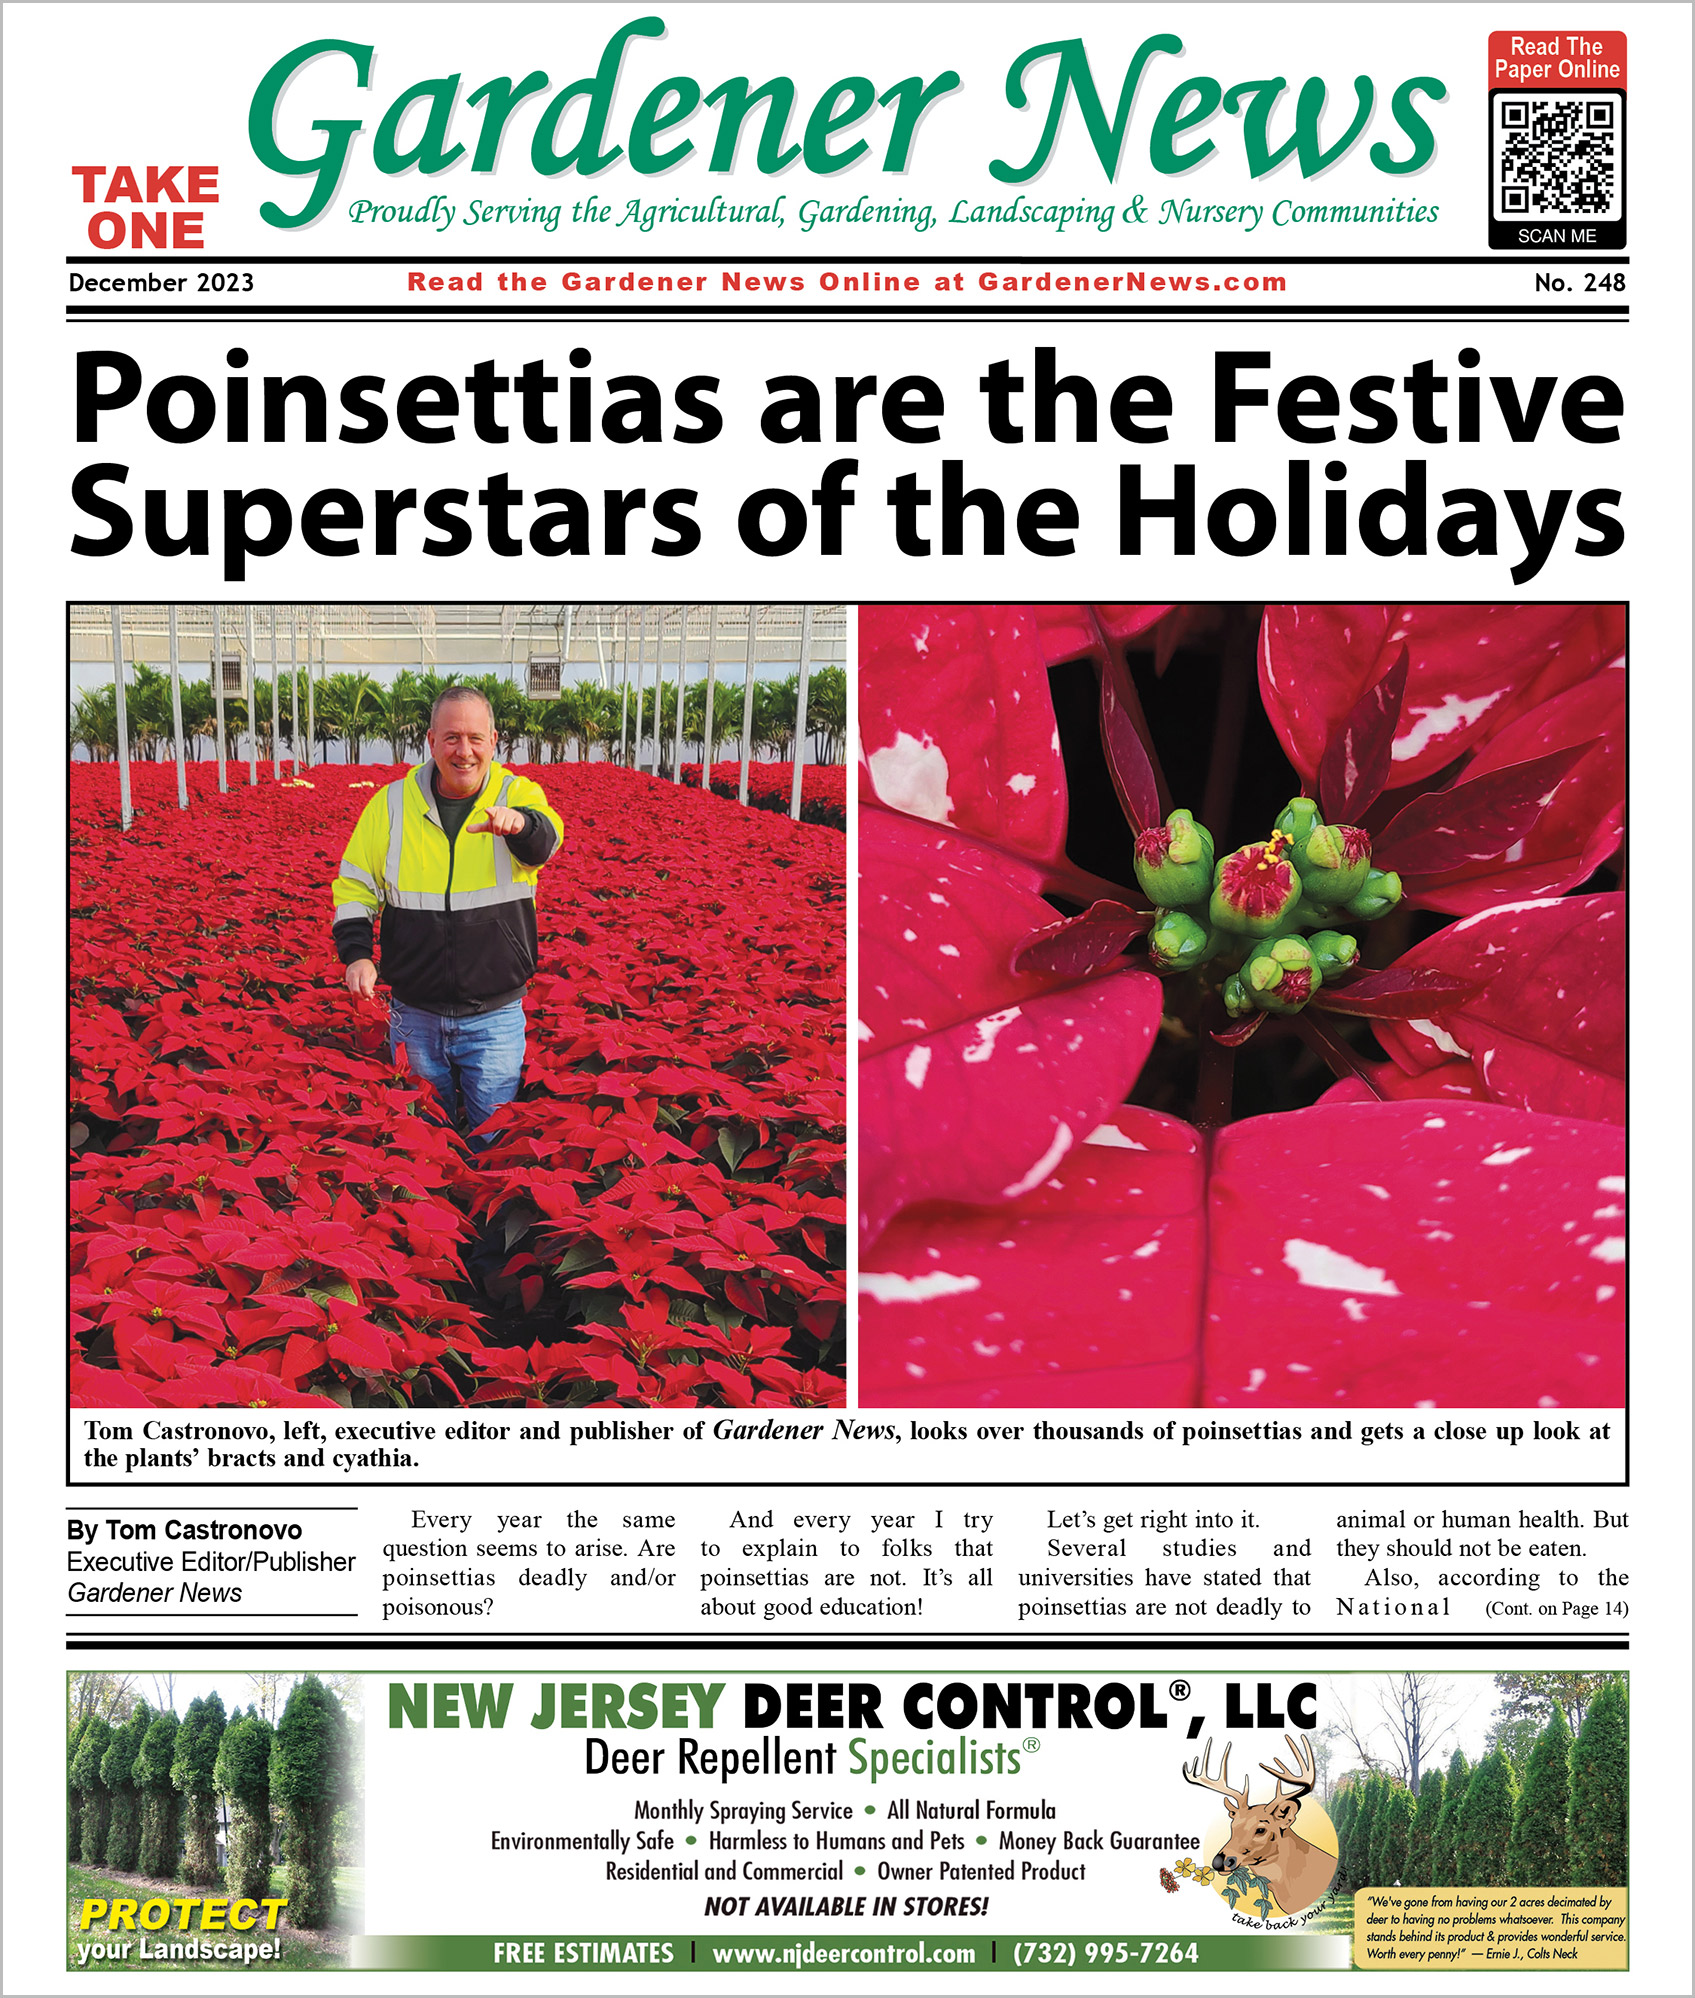 The December 2023 issue of the Gardener News